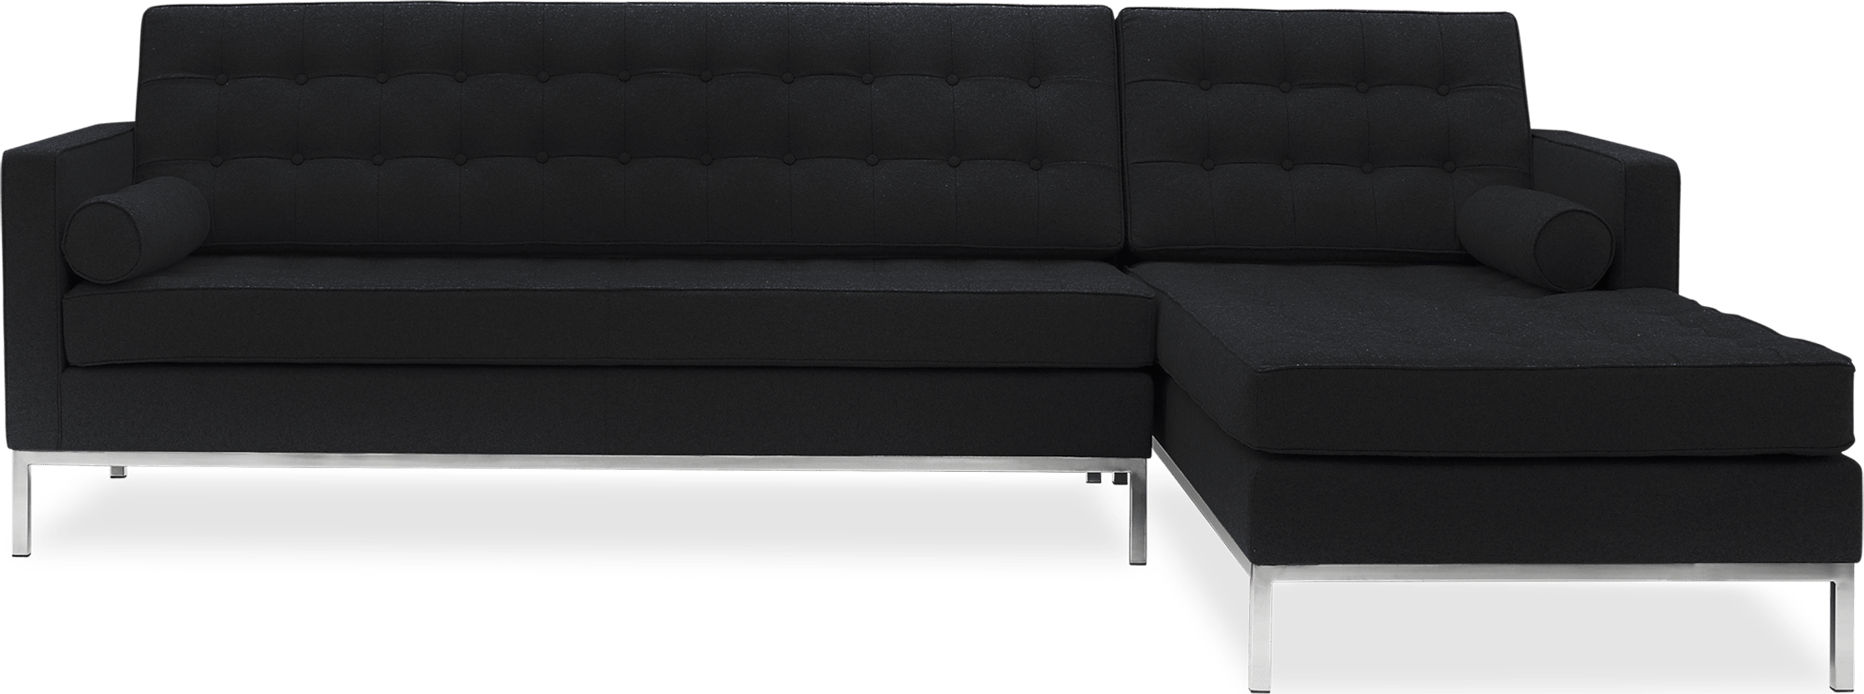 Knoll Corner Sofa Wool/Black image.